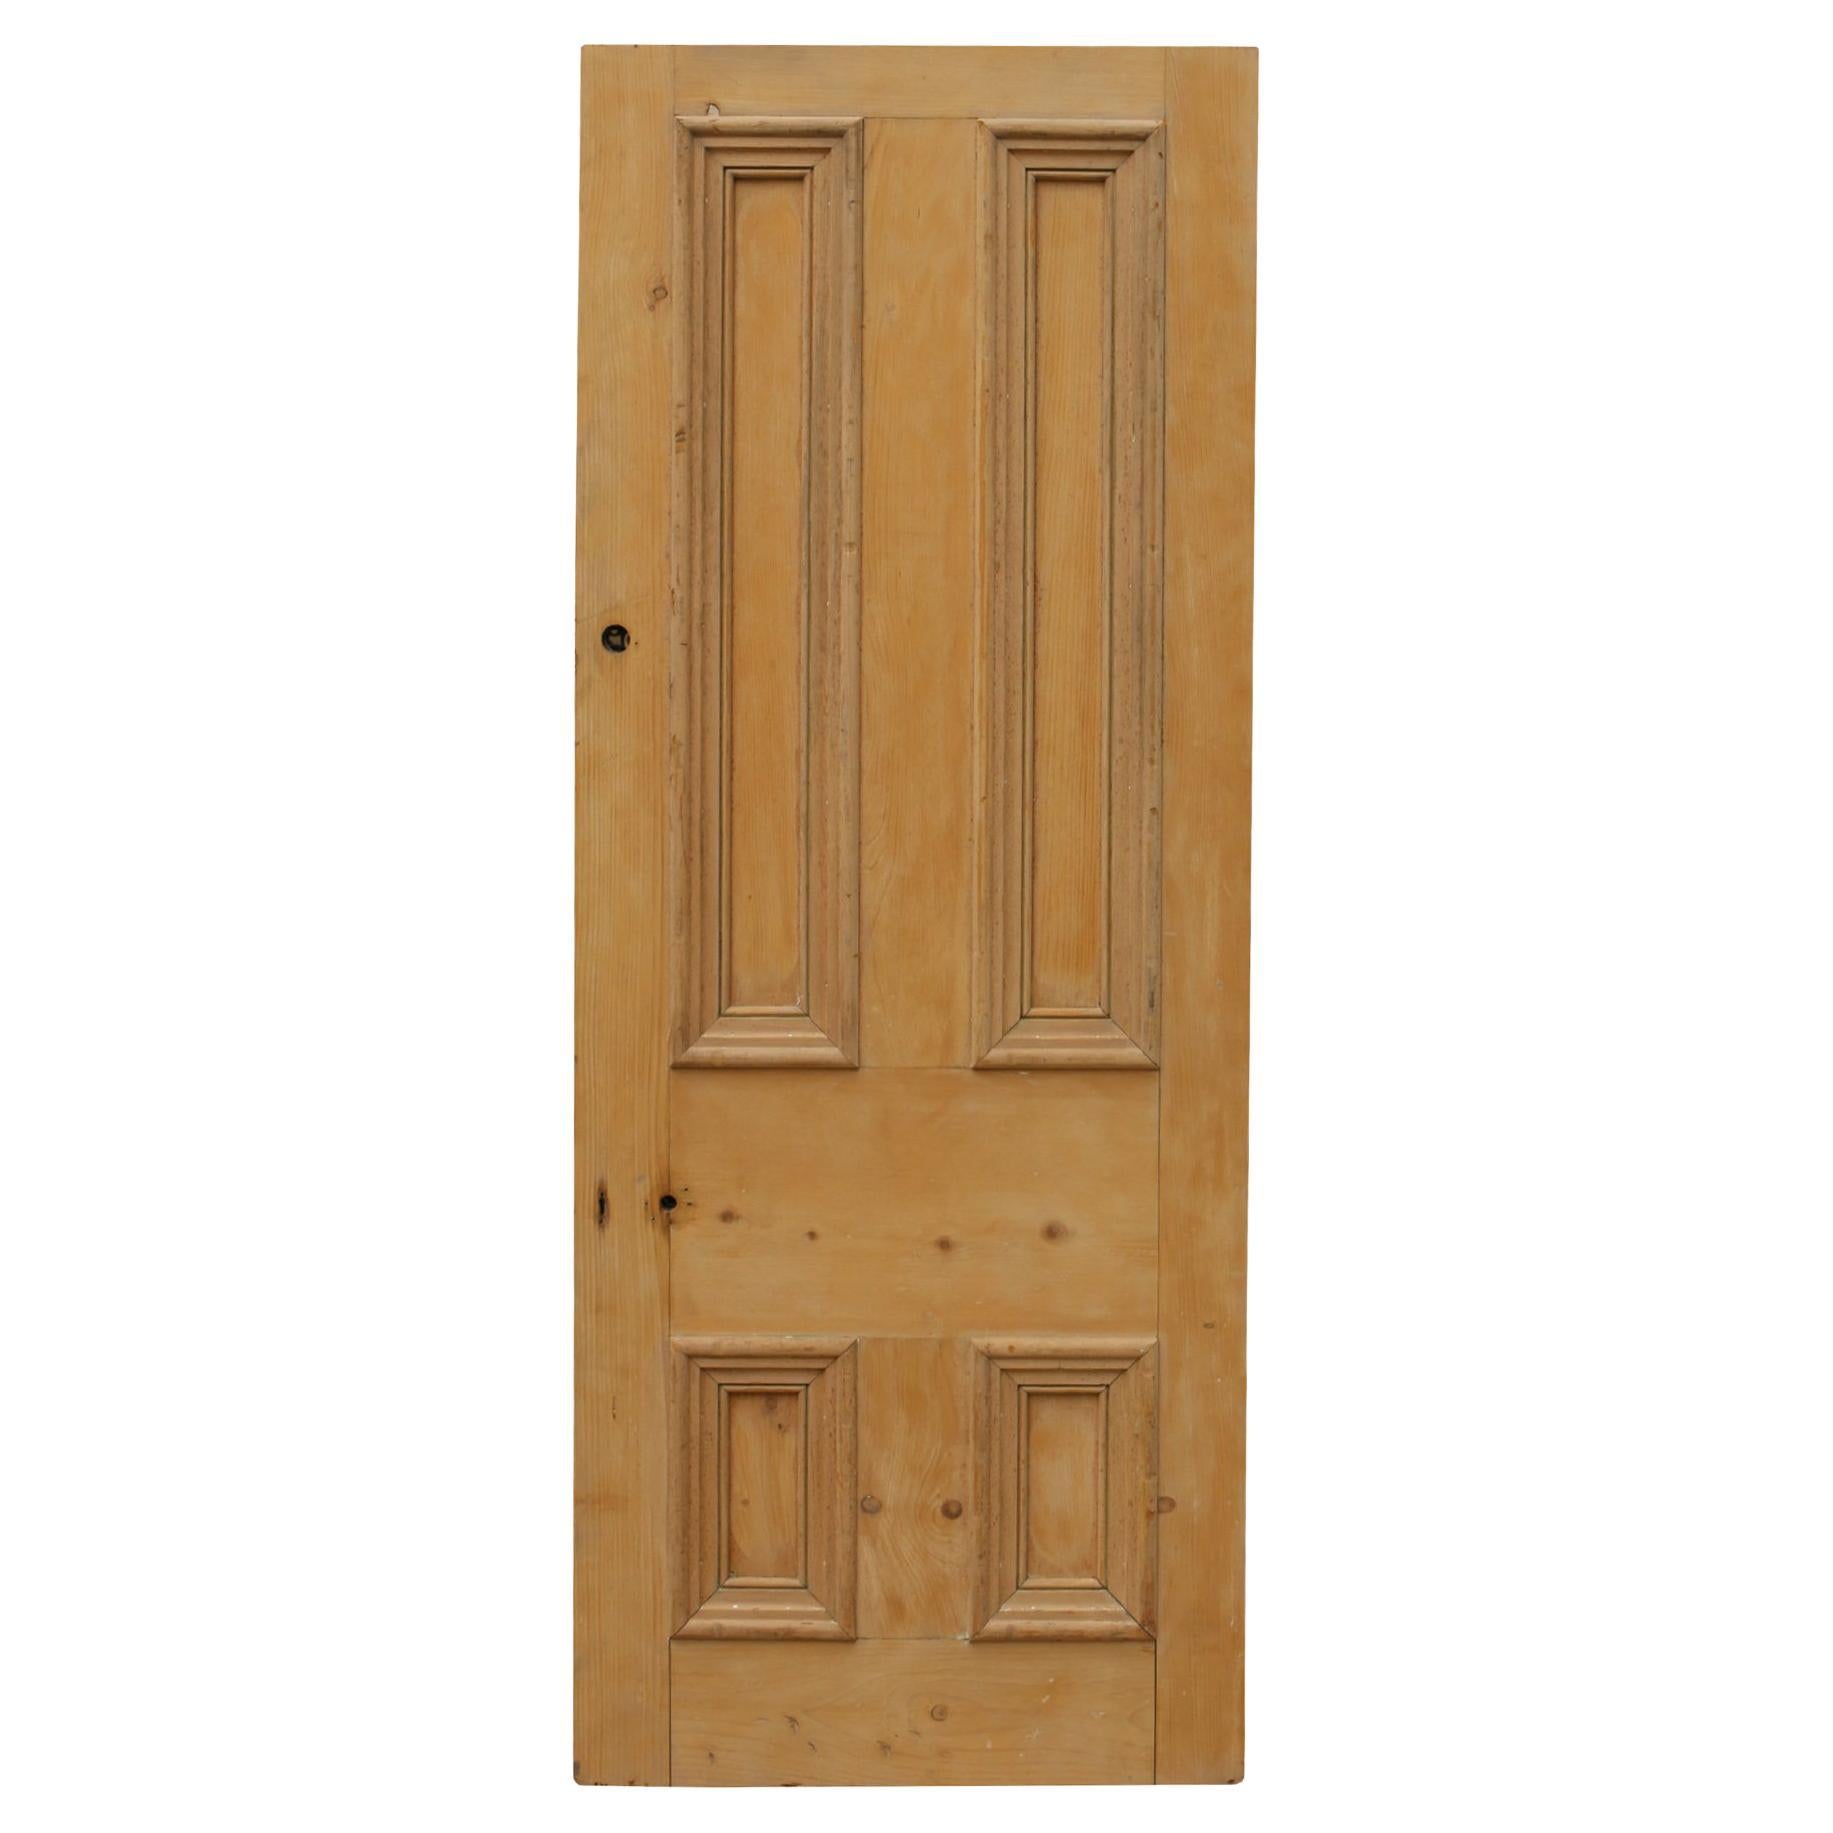 Reclaimed Pine Front Door